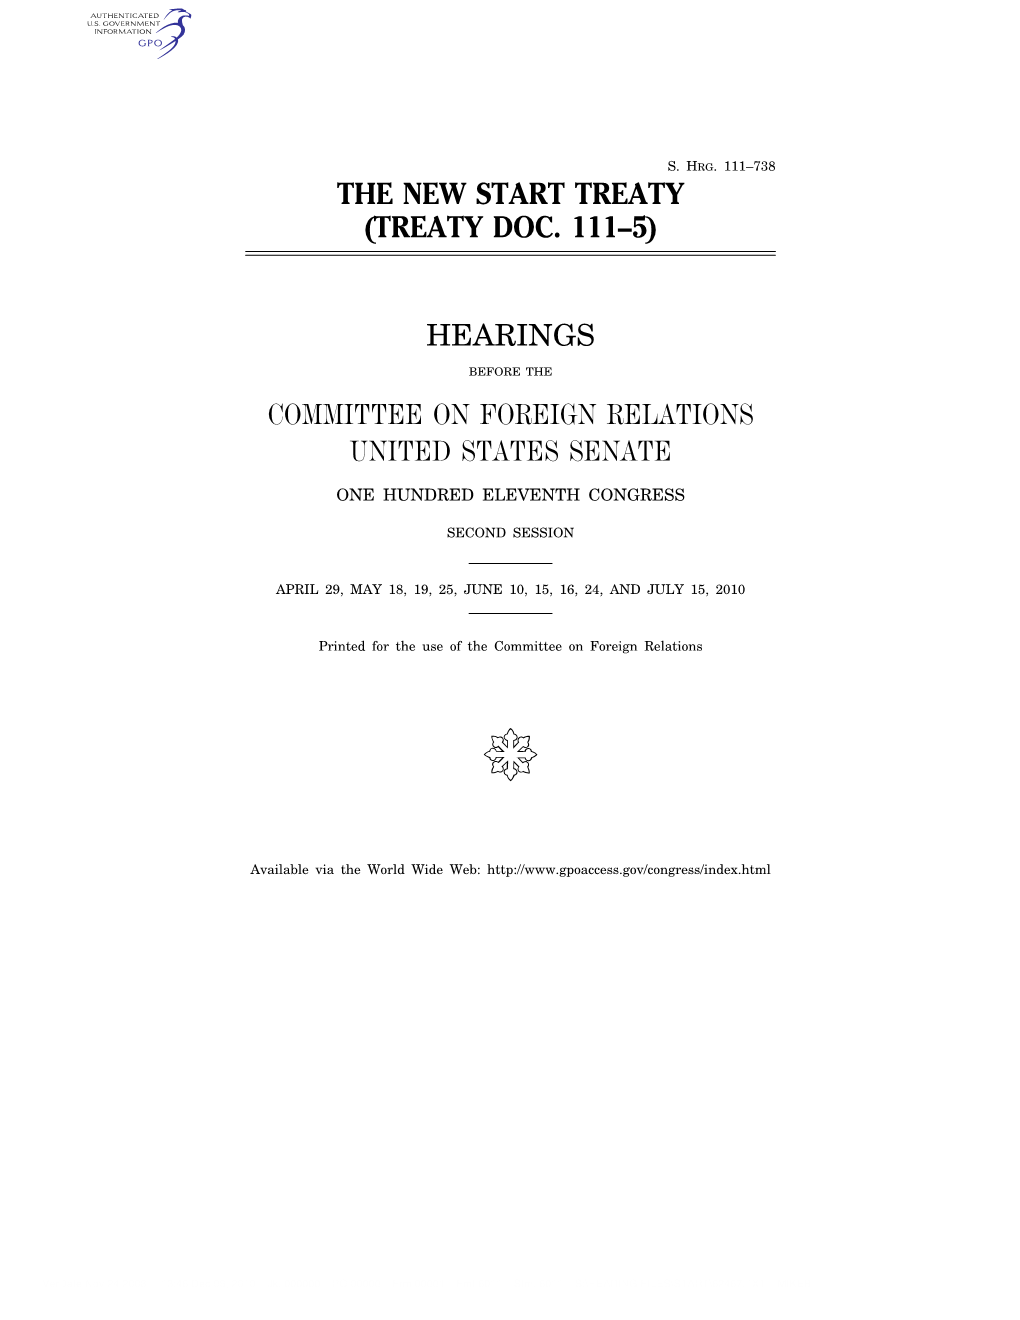 Treaty Doc. 111–5)